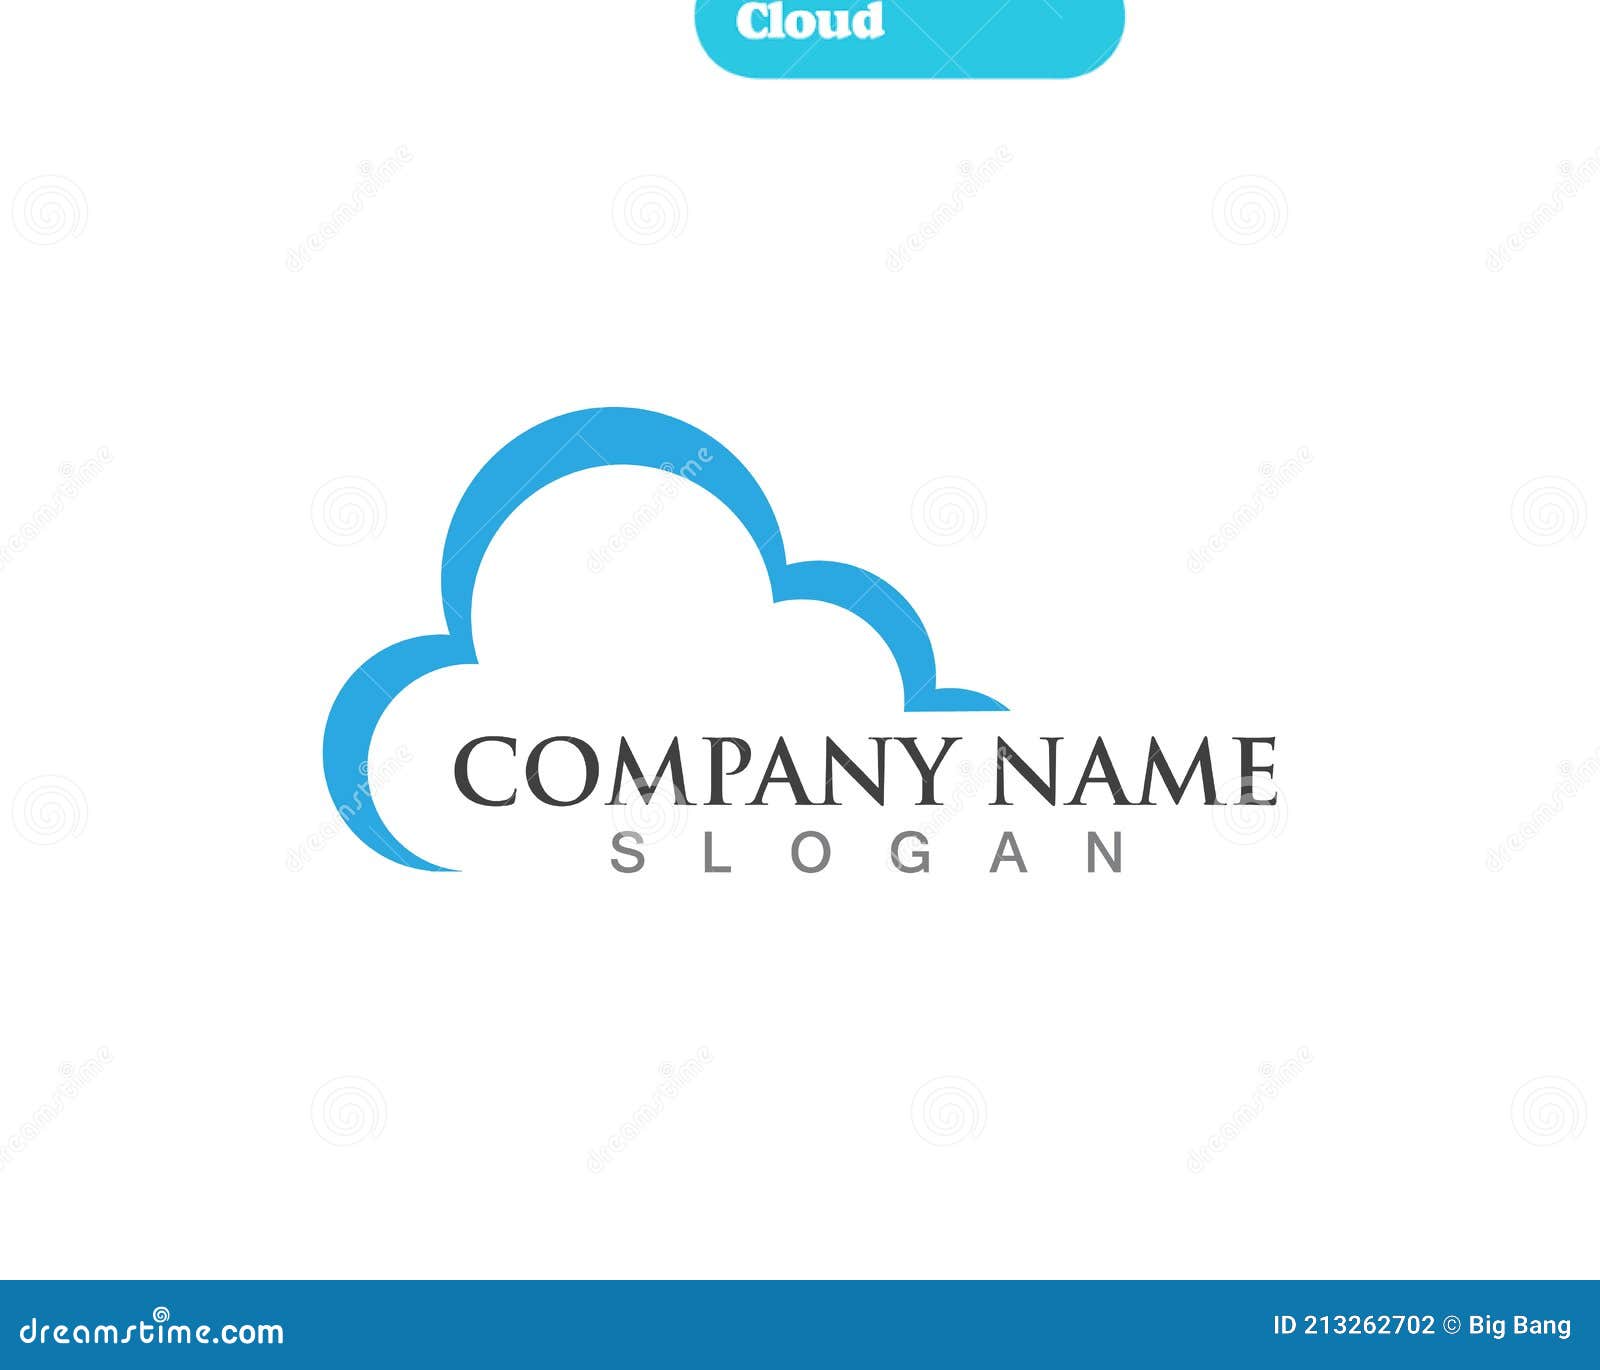 tomplate-do-logotipo-cloud-sky-ilustra-o-do-vetor-ilustra-o-de